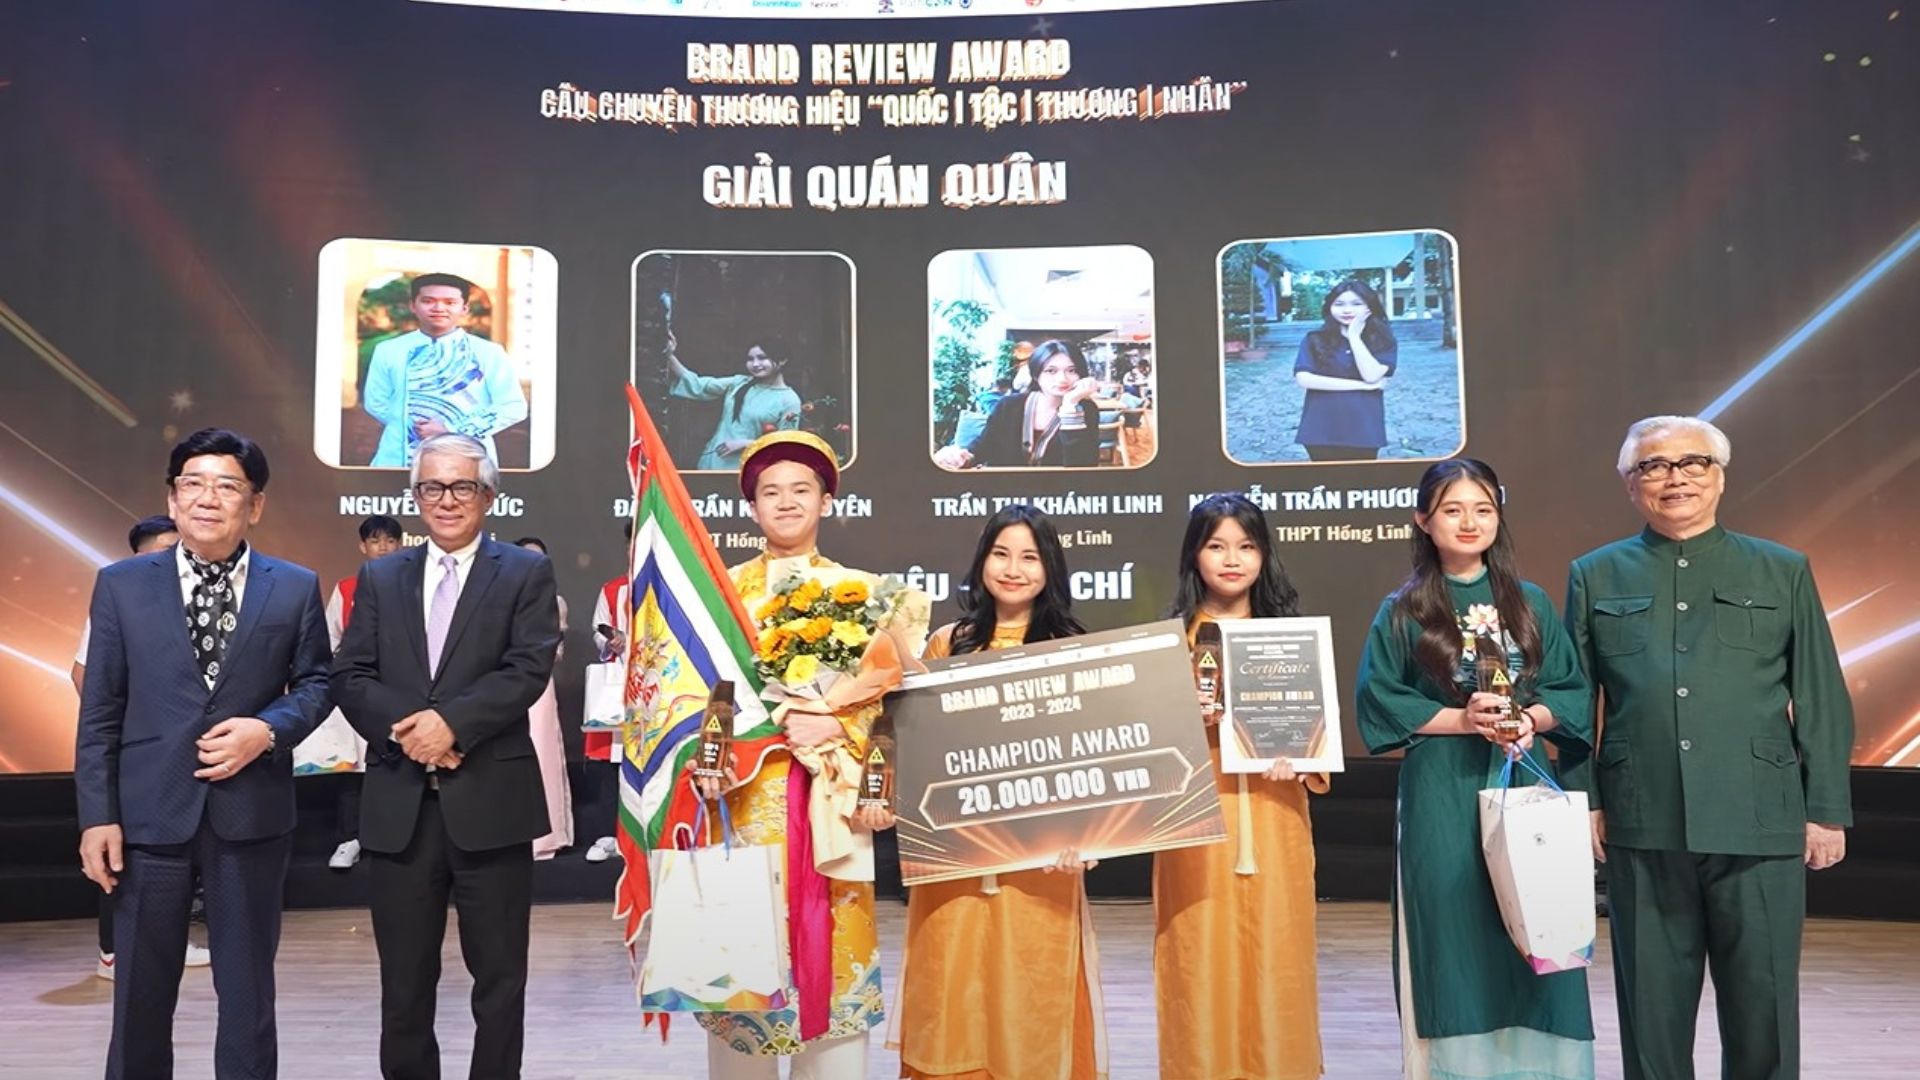 Quán quân Brand Review Award 2024 - Tạp chí Review Nghi thức Hầu Đồng